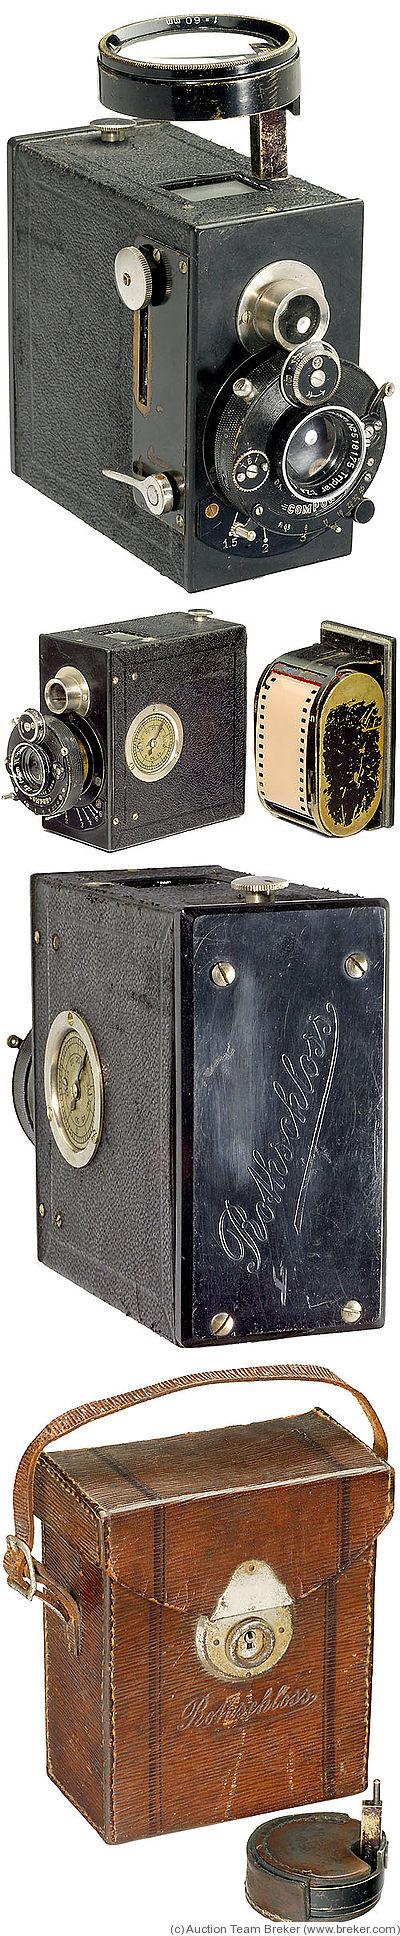 Rothgiesser & Schlossmann: Rothschloss camera